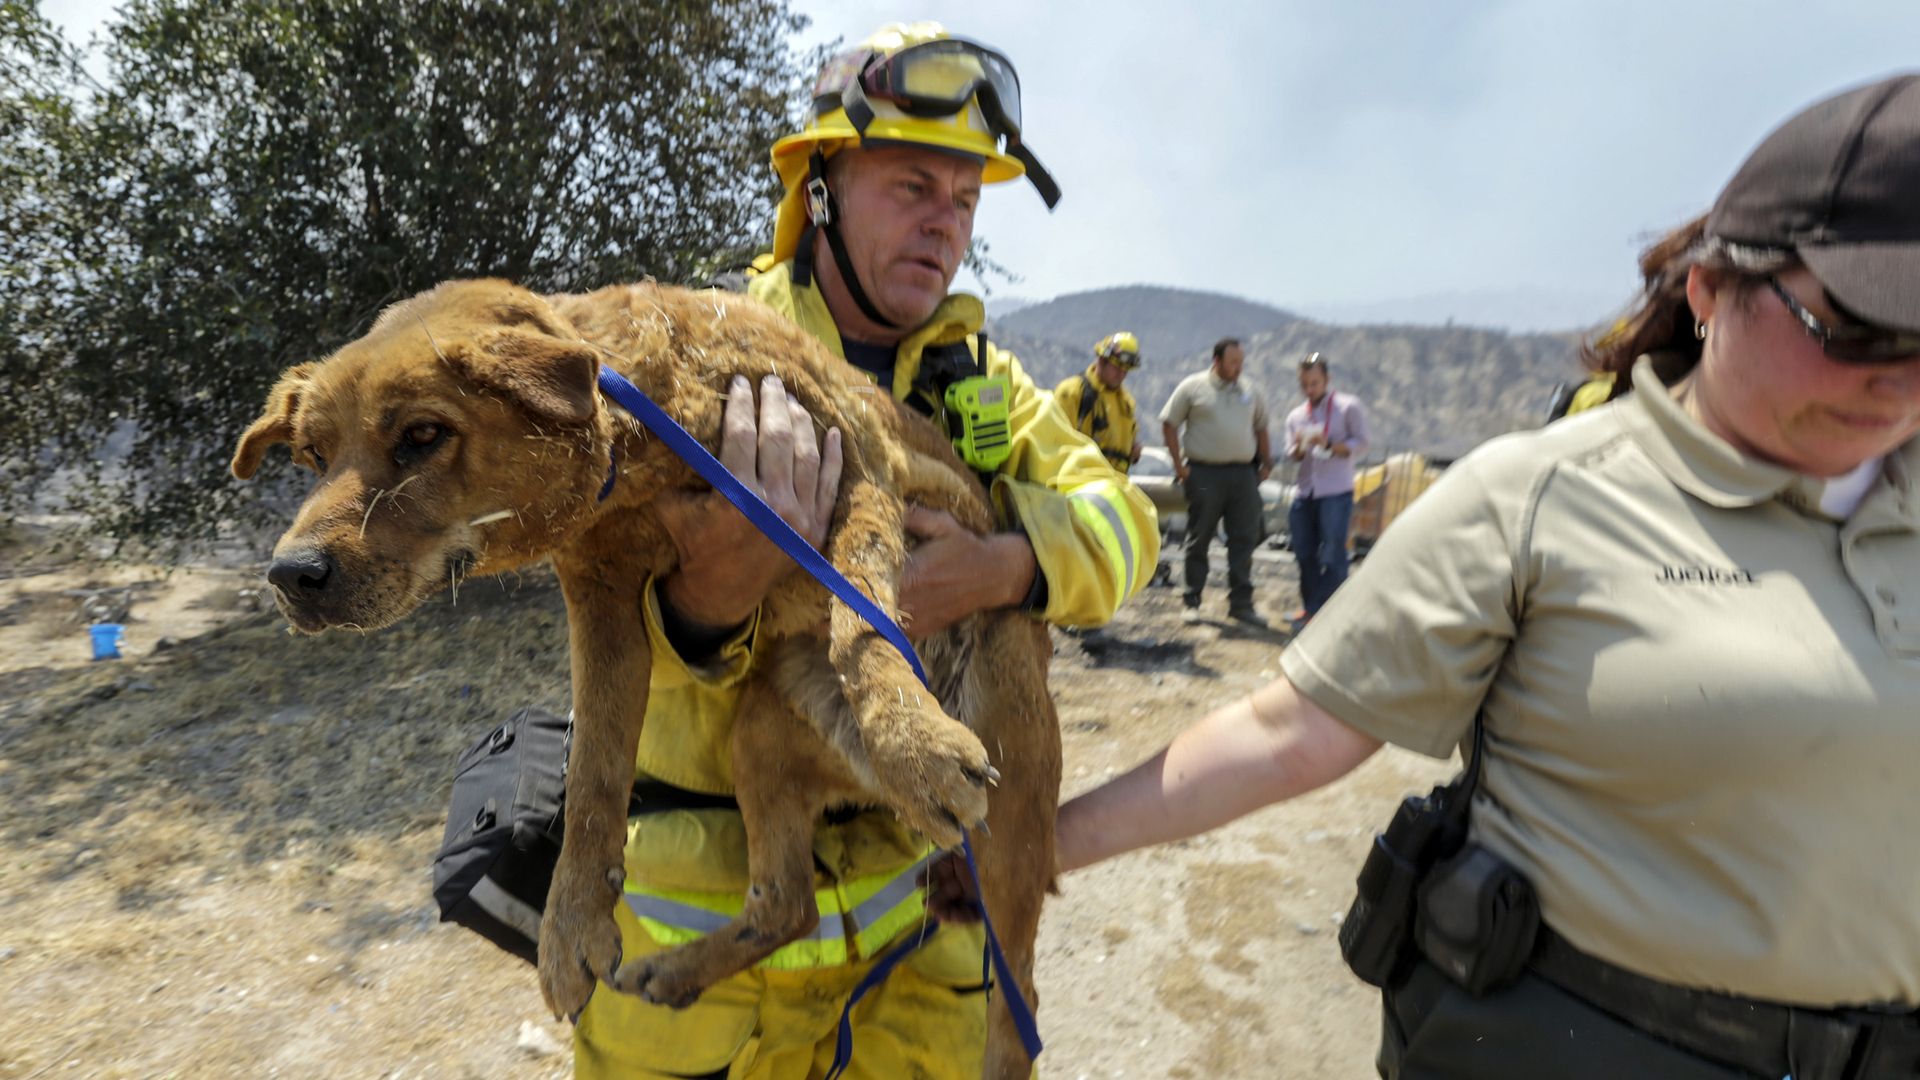 A fireman carrying a dog